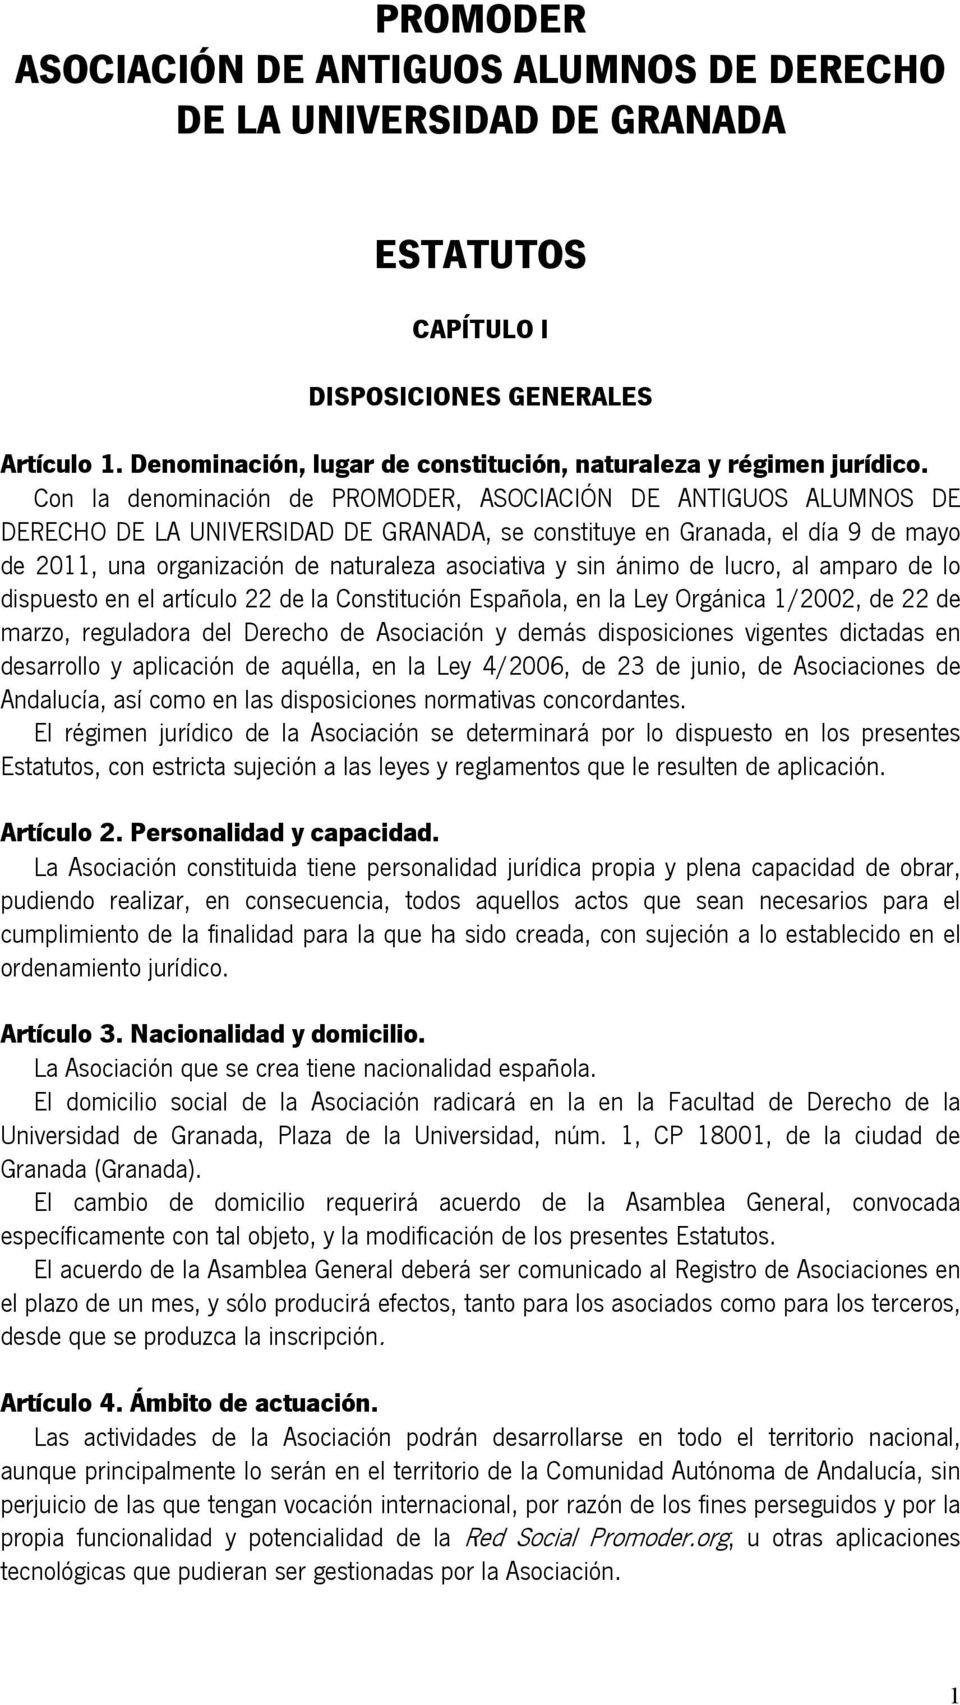 Con la denominación de PROMODER, ASOCIACIÓN DE ANTIGUOS ALUMNOS DE DERECHO DE LA UNIVERSIDAD DE GRANADA, se constituye en Granada, el día 9 de mayo de 2011, una organización de naturaleza asociativa